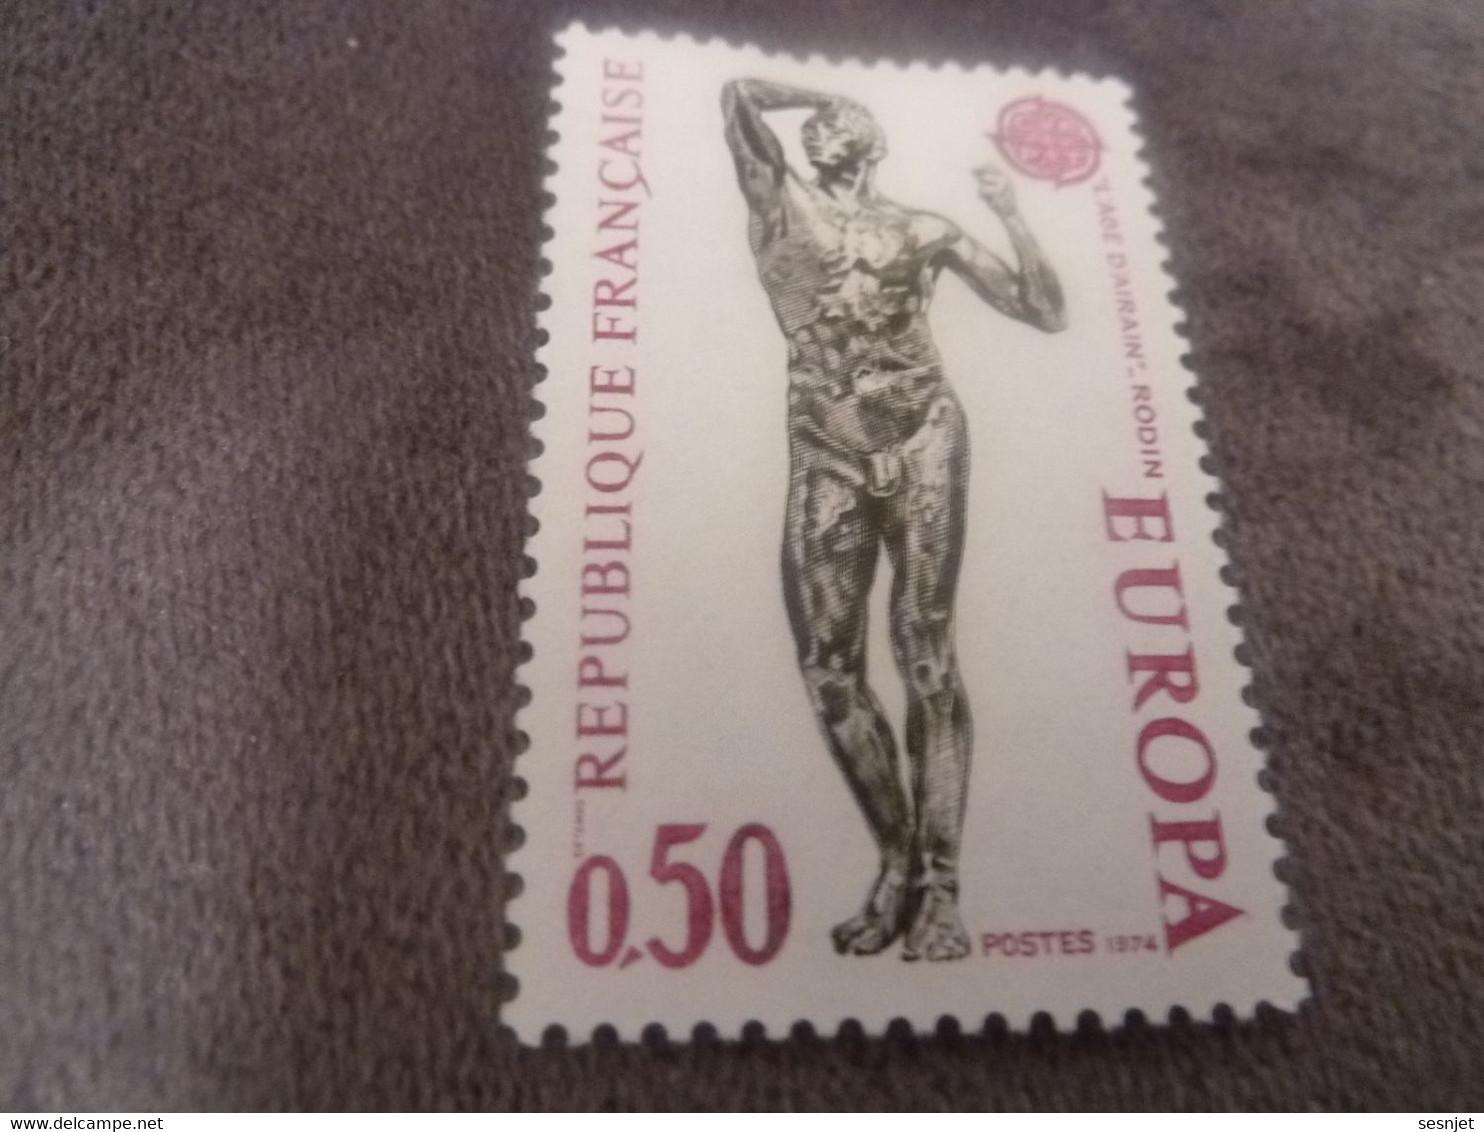 Rodin (1840-1917) L'Ange D'Airain - Europa - 50c. - Yt 1789 - Lilas Et Noir - Neuf Avec Trace - Année 1974 - - 1974